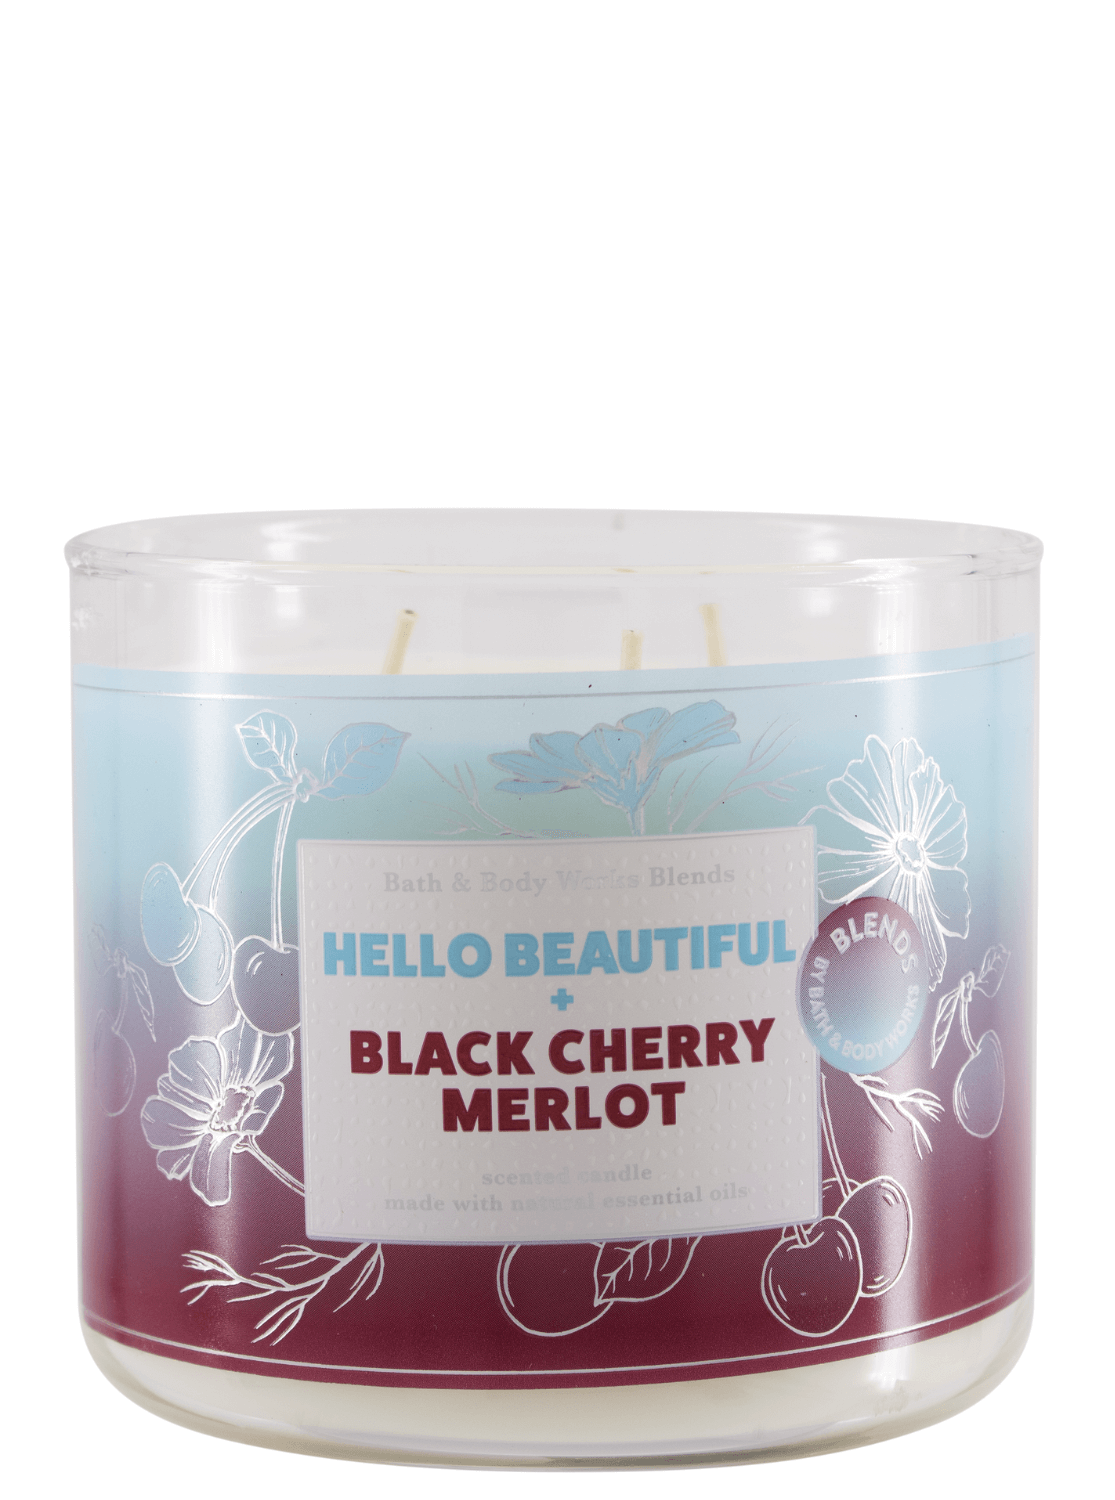 3-Docht Kerze - Hello Beautiful + Black Cherry Merlot - 411g